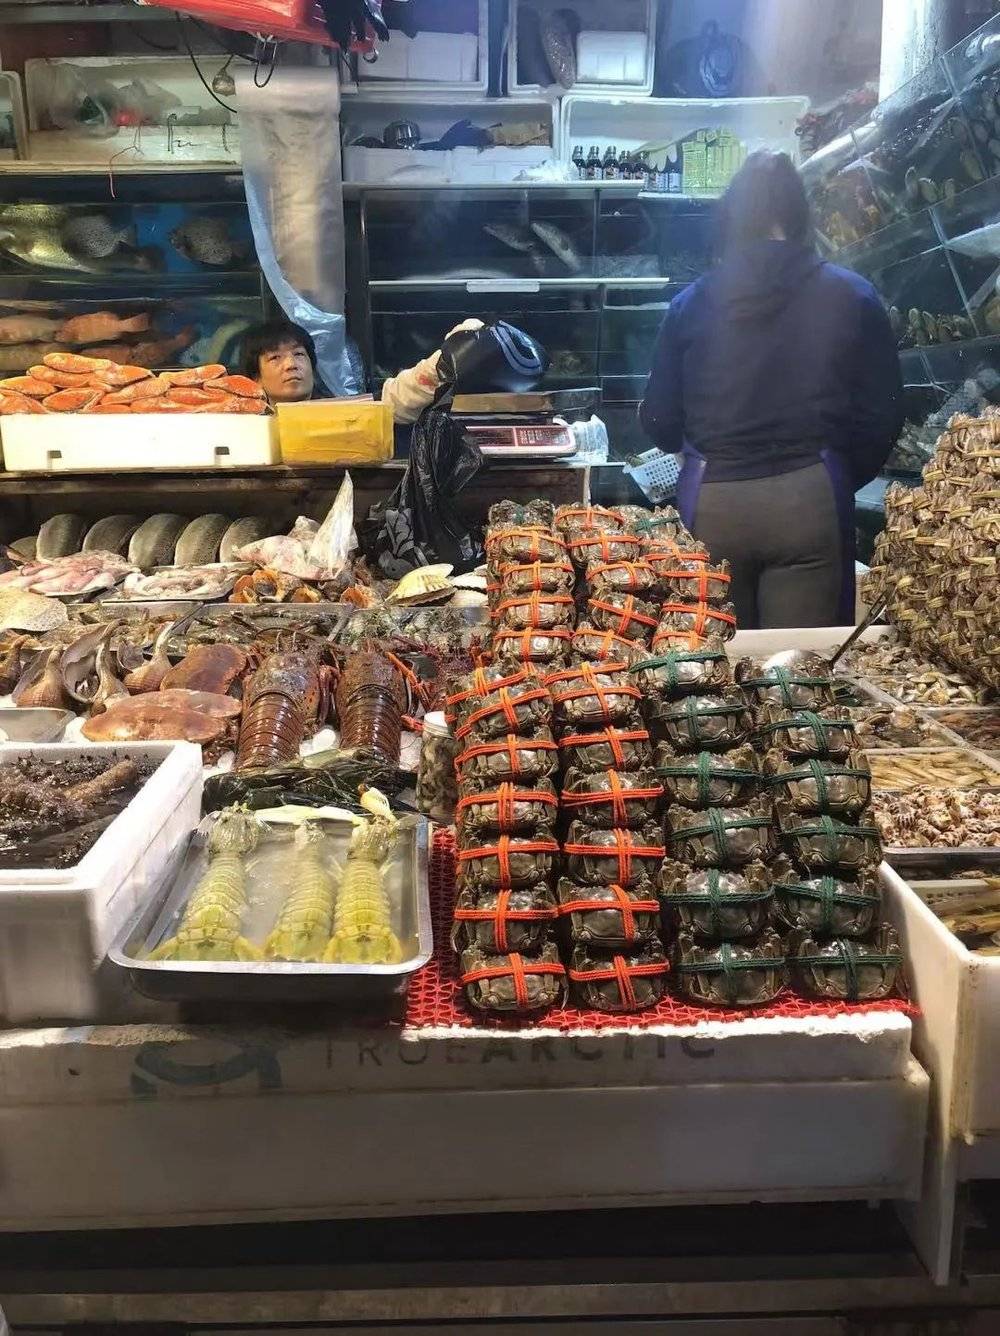 ●三源里菜市场档位上售卖的海鲜，已经远离普通市民的消费需求。摄影：钟淑如